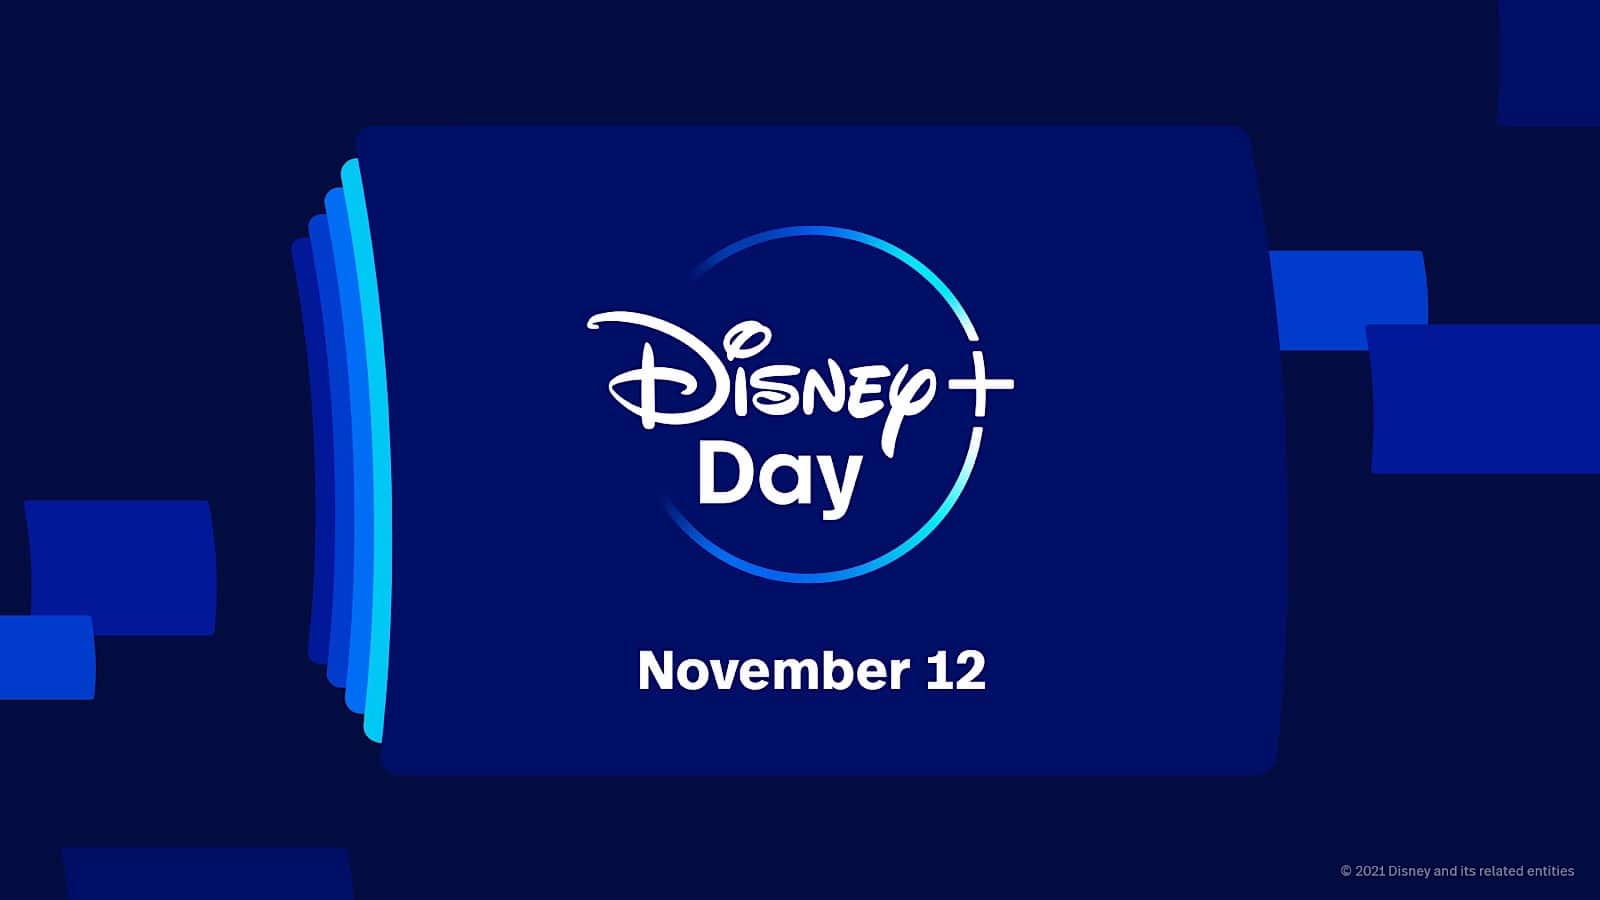 Disney+ Day in 2021